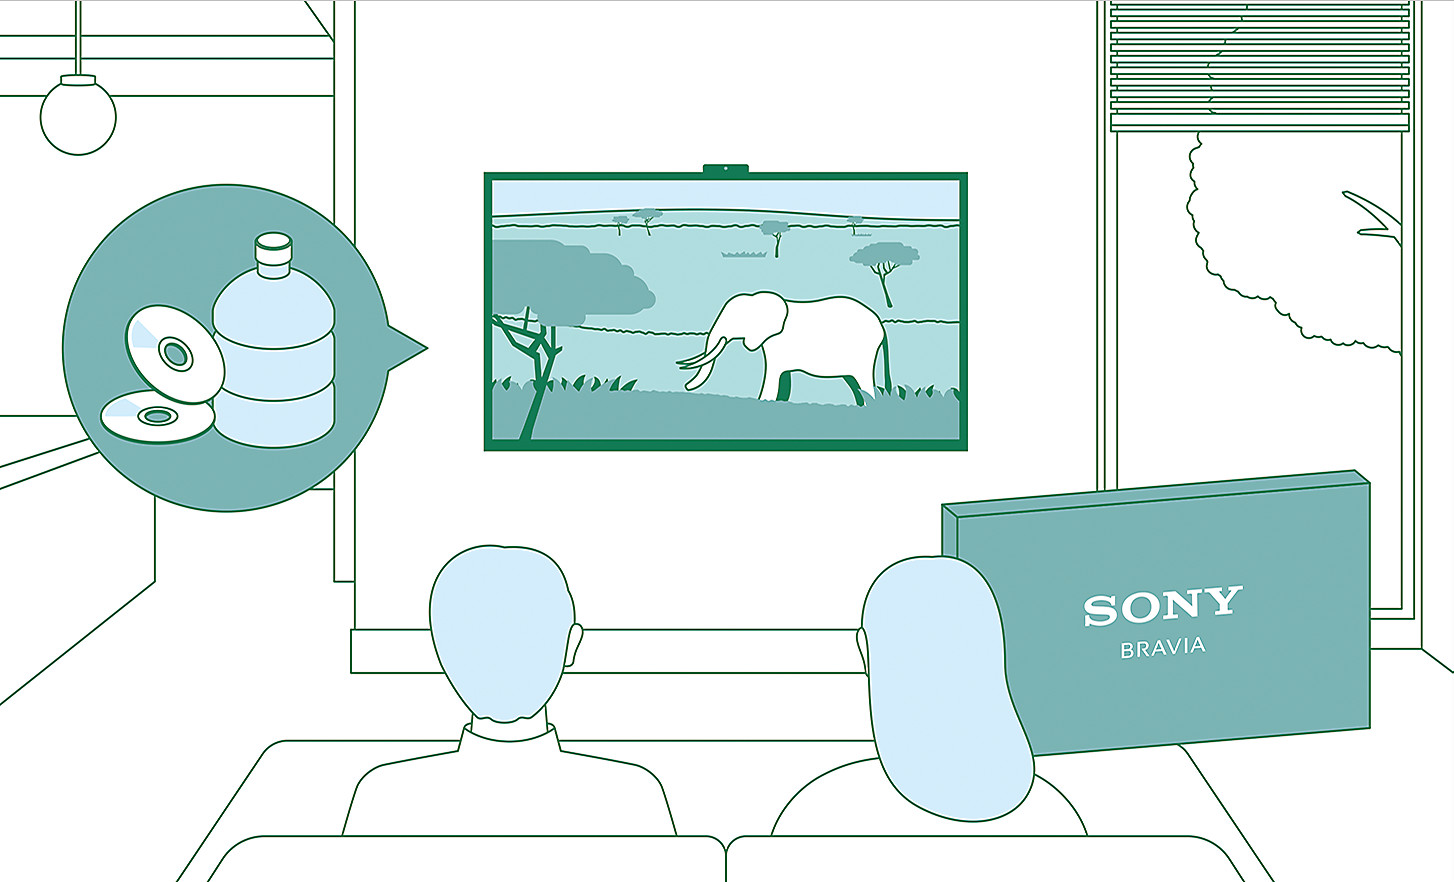 Ilustracija para koji gleda televizor pri čemu grafički elementi ukazuju na inicijative održivosti